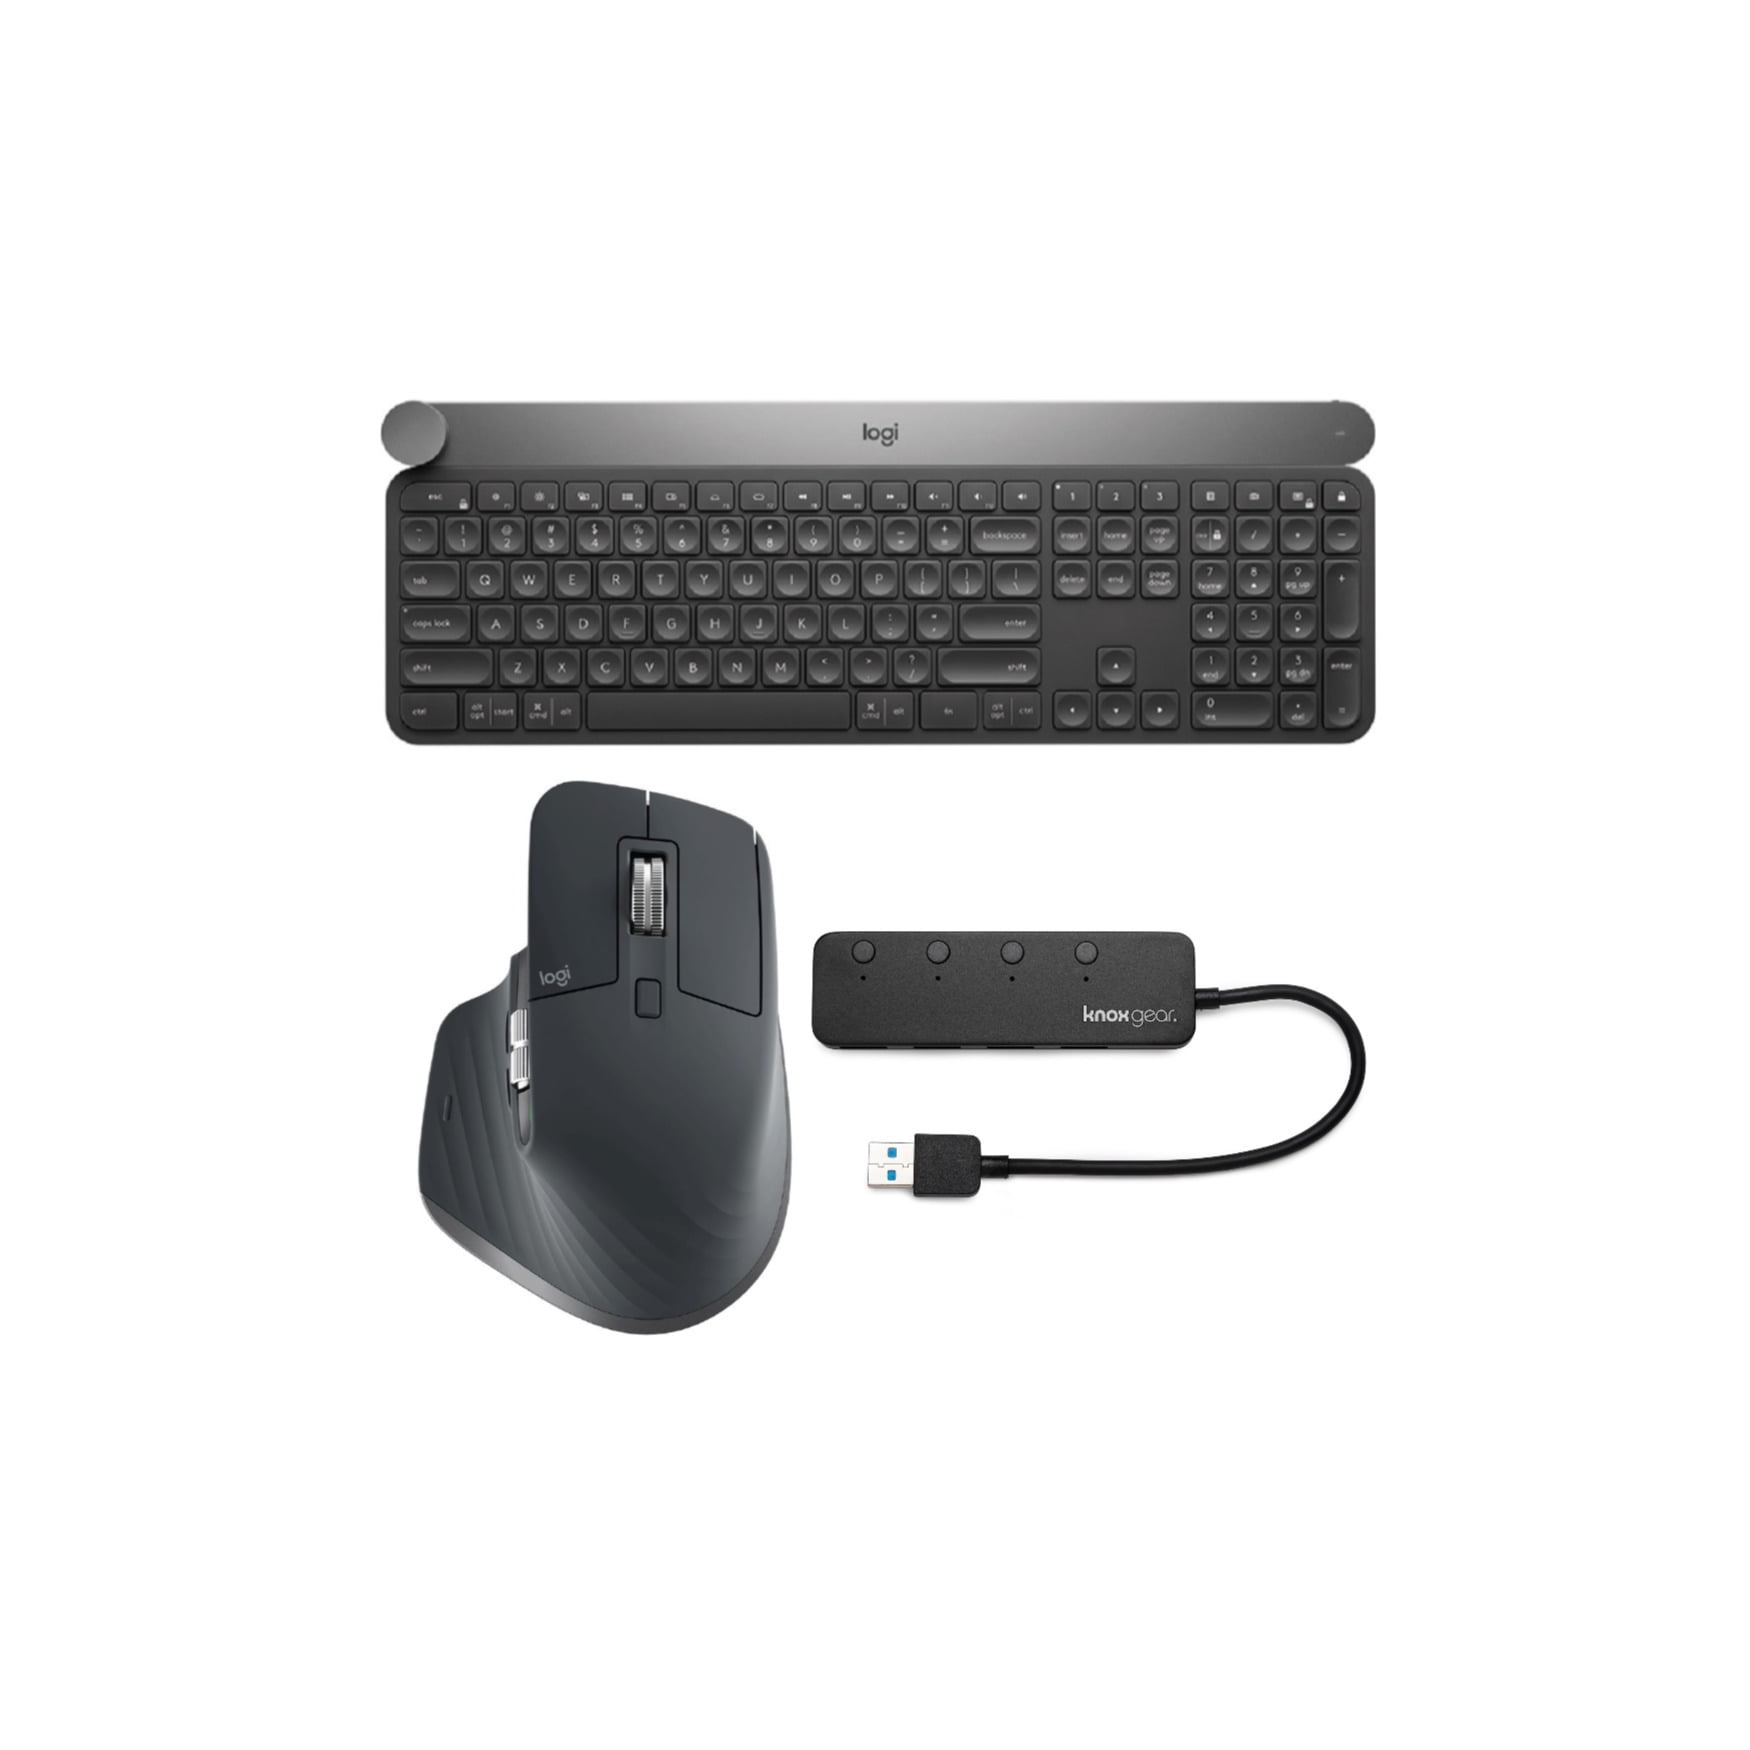 falskhed Forskelsbehandling Demokratisk parti Logitech Craft Advanced Wireless Keyboard with Mx Master 3 Mouse and USB  Hub - Walmart.com